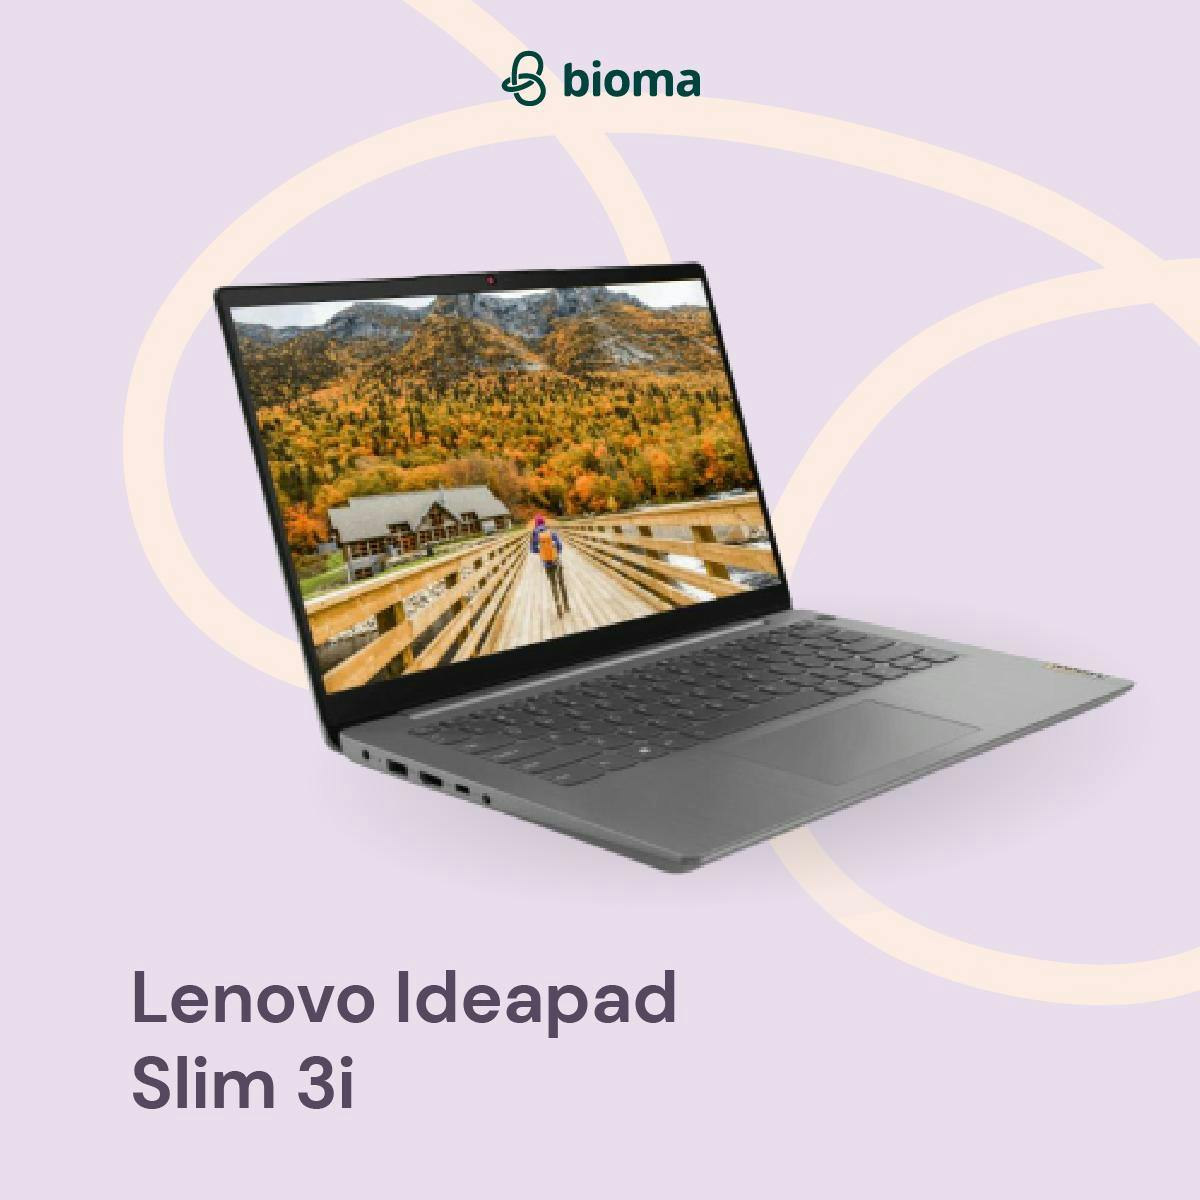 Lenovo Ideapad Slim 3i